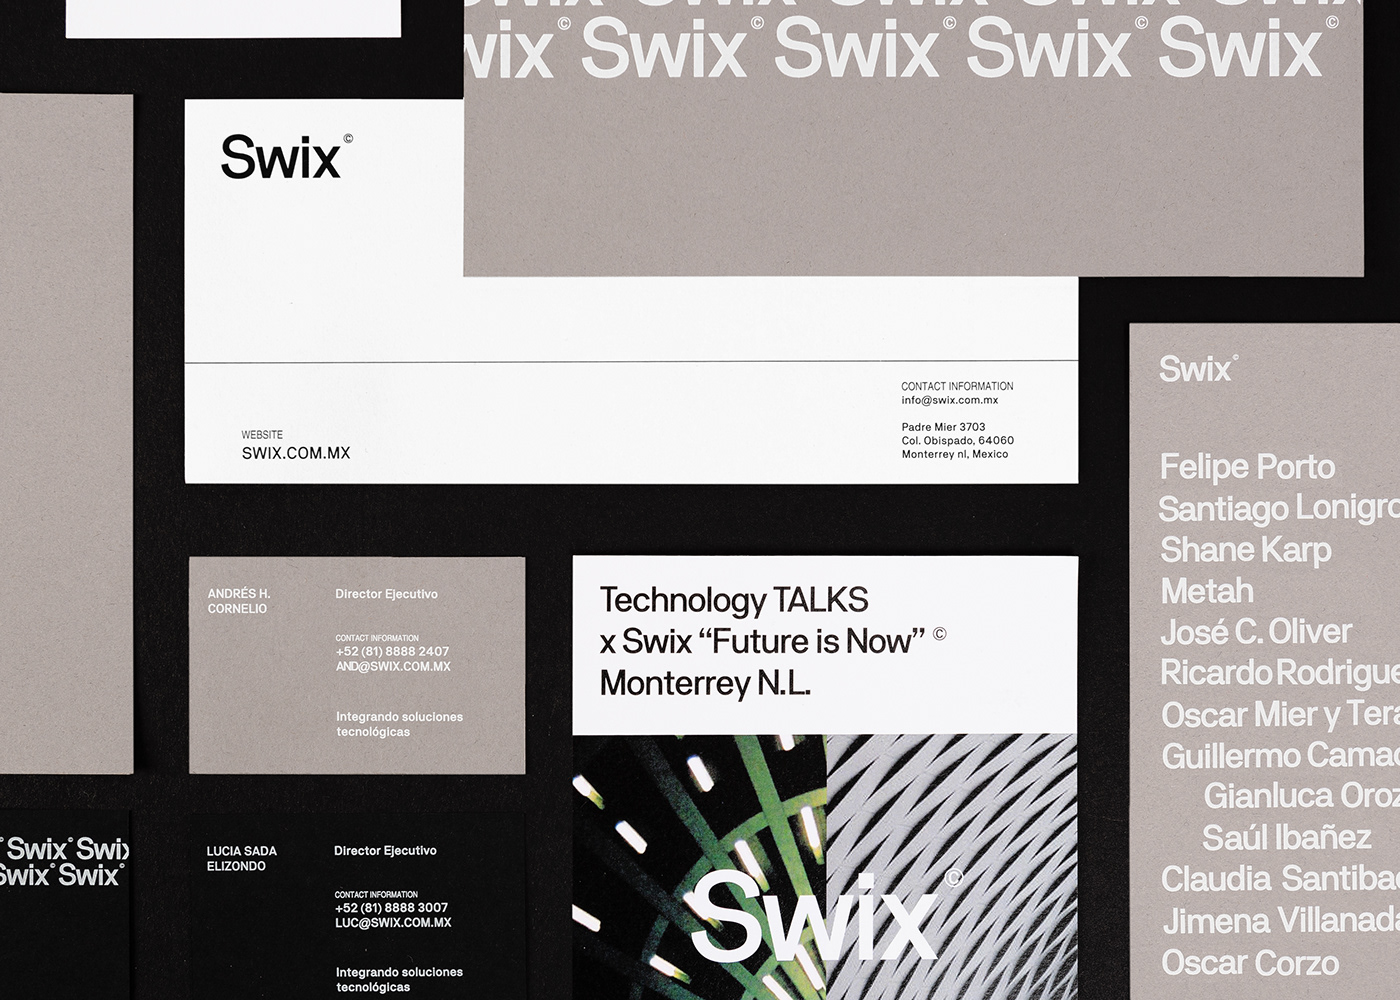 swix gradients Technology brand design monterrey solutions